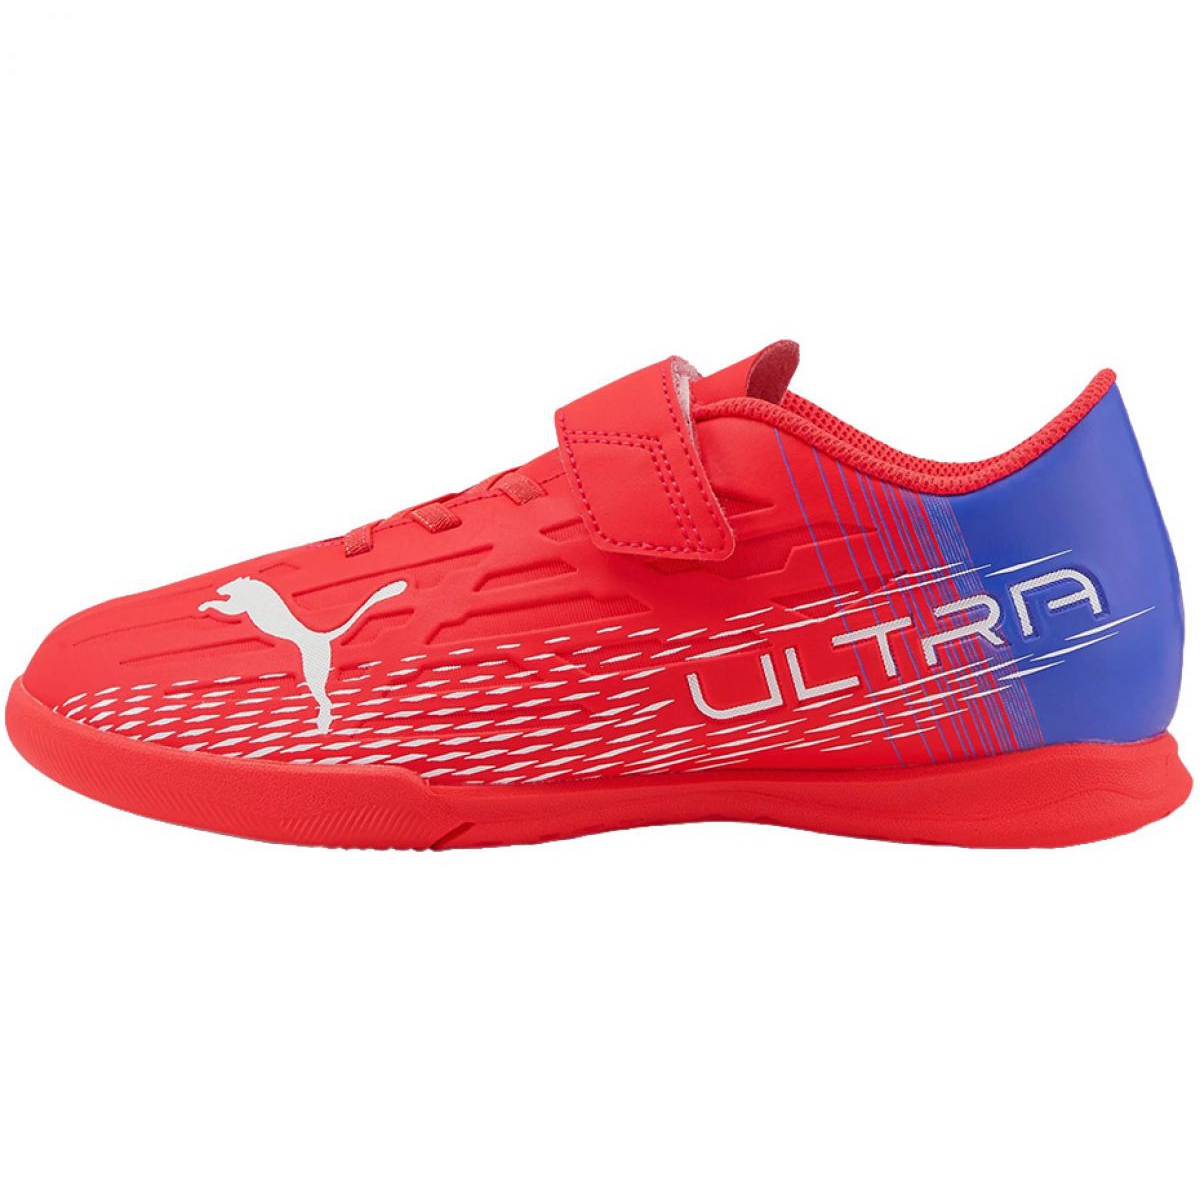 Puma Ultra 4.3 IT Jr